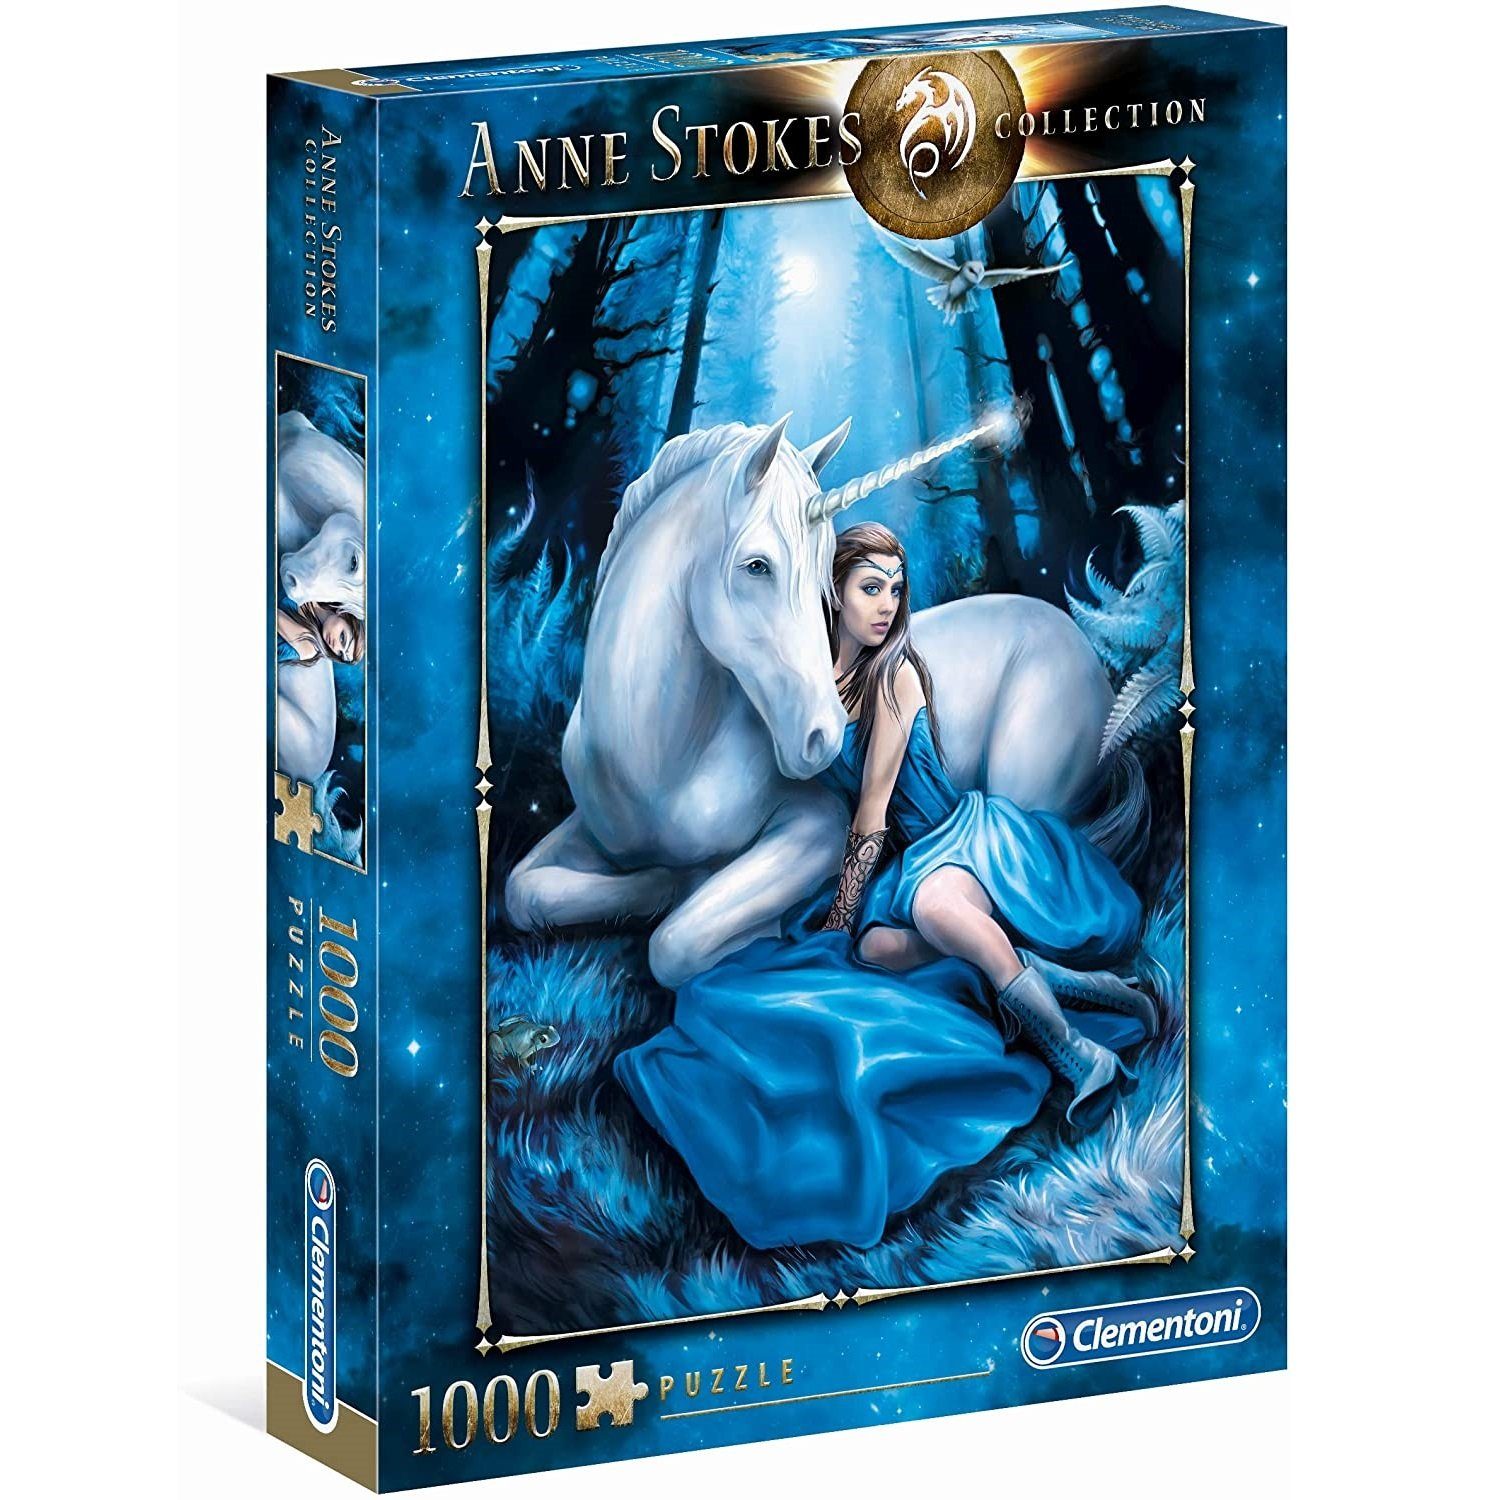 Clementoni® Puzzle Clementoni - Anne Teile, 1000 Blue Stokes: 1000 Moon, Puzzleteile